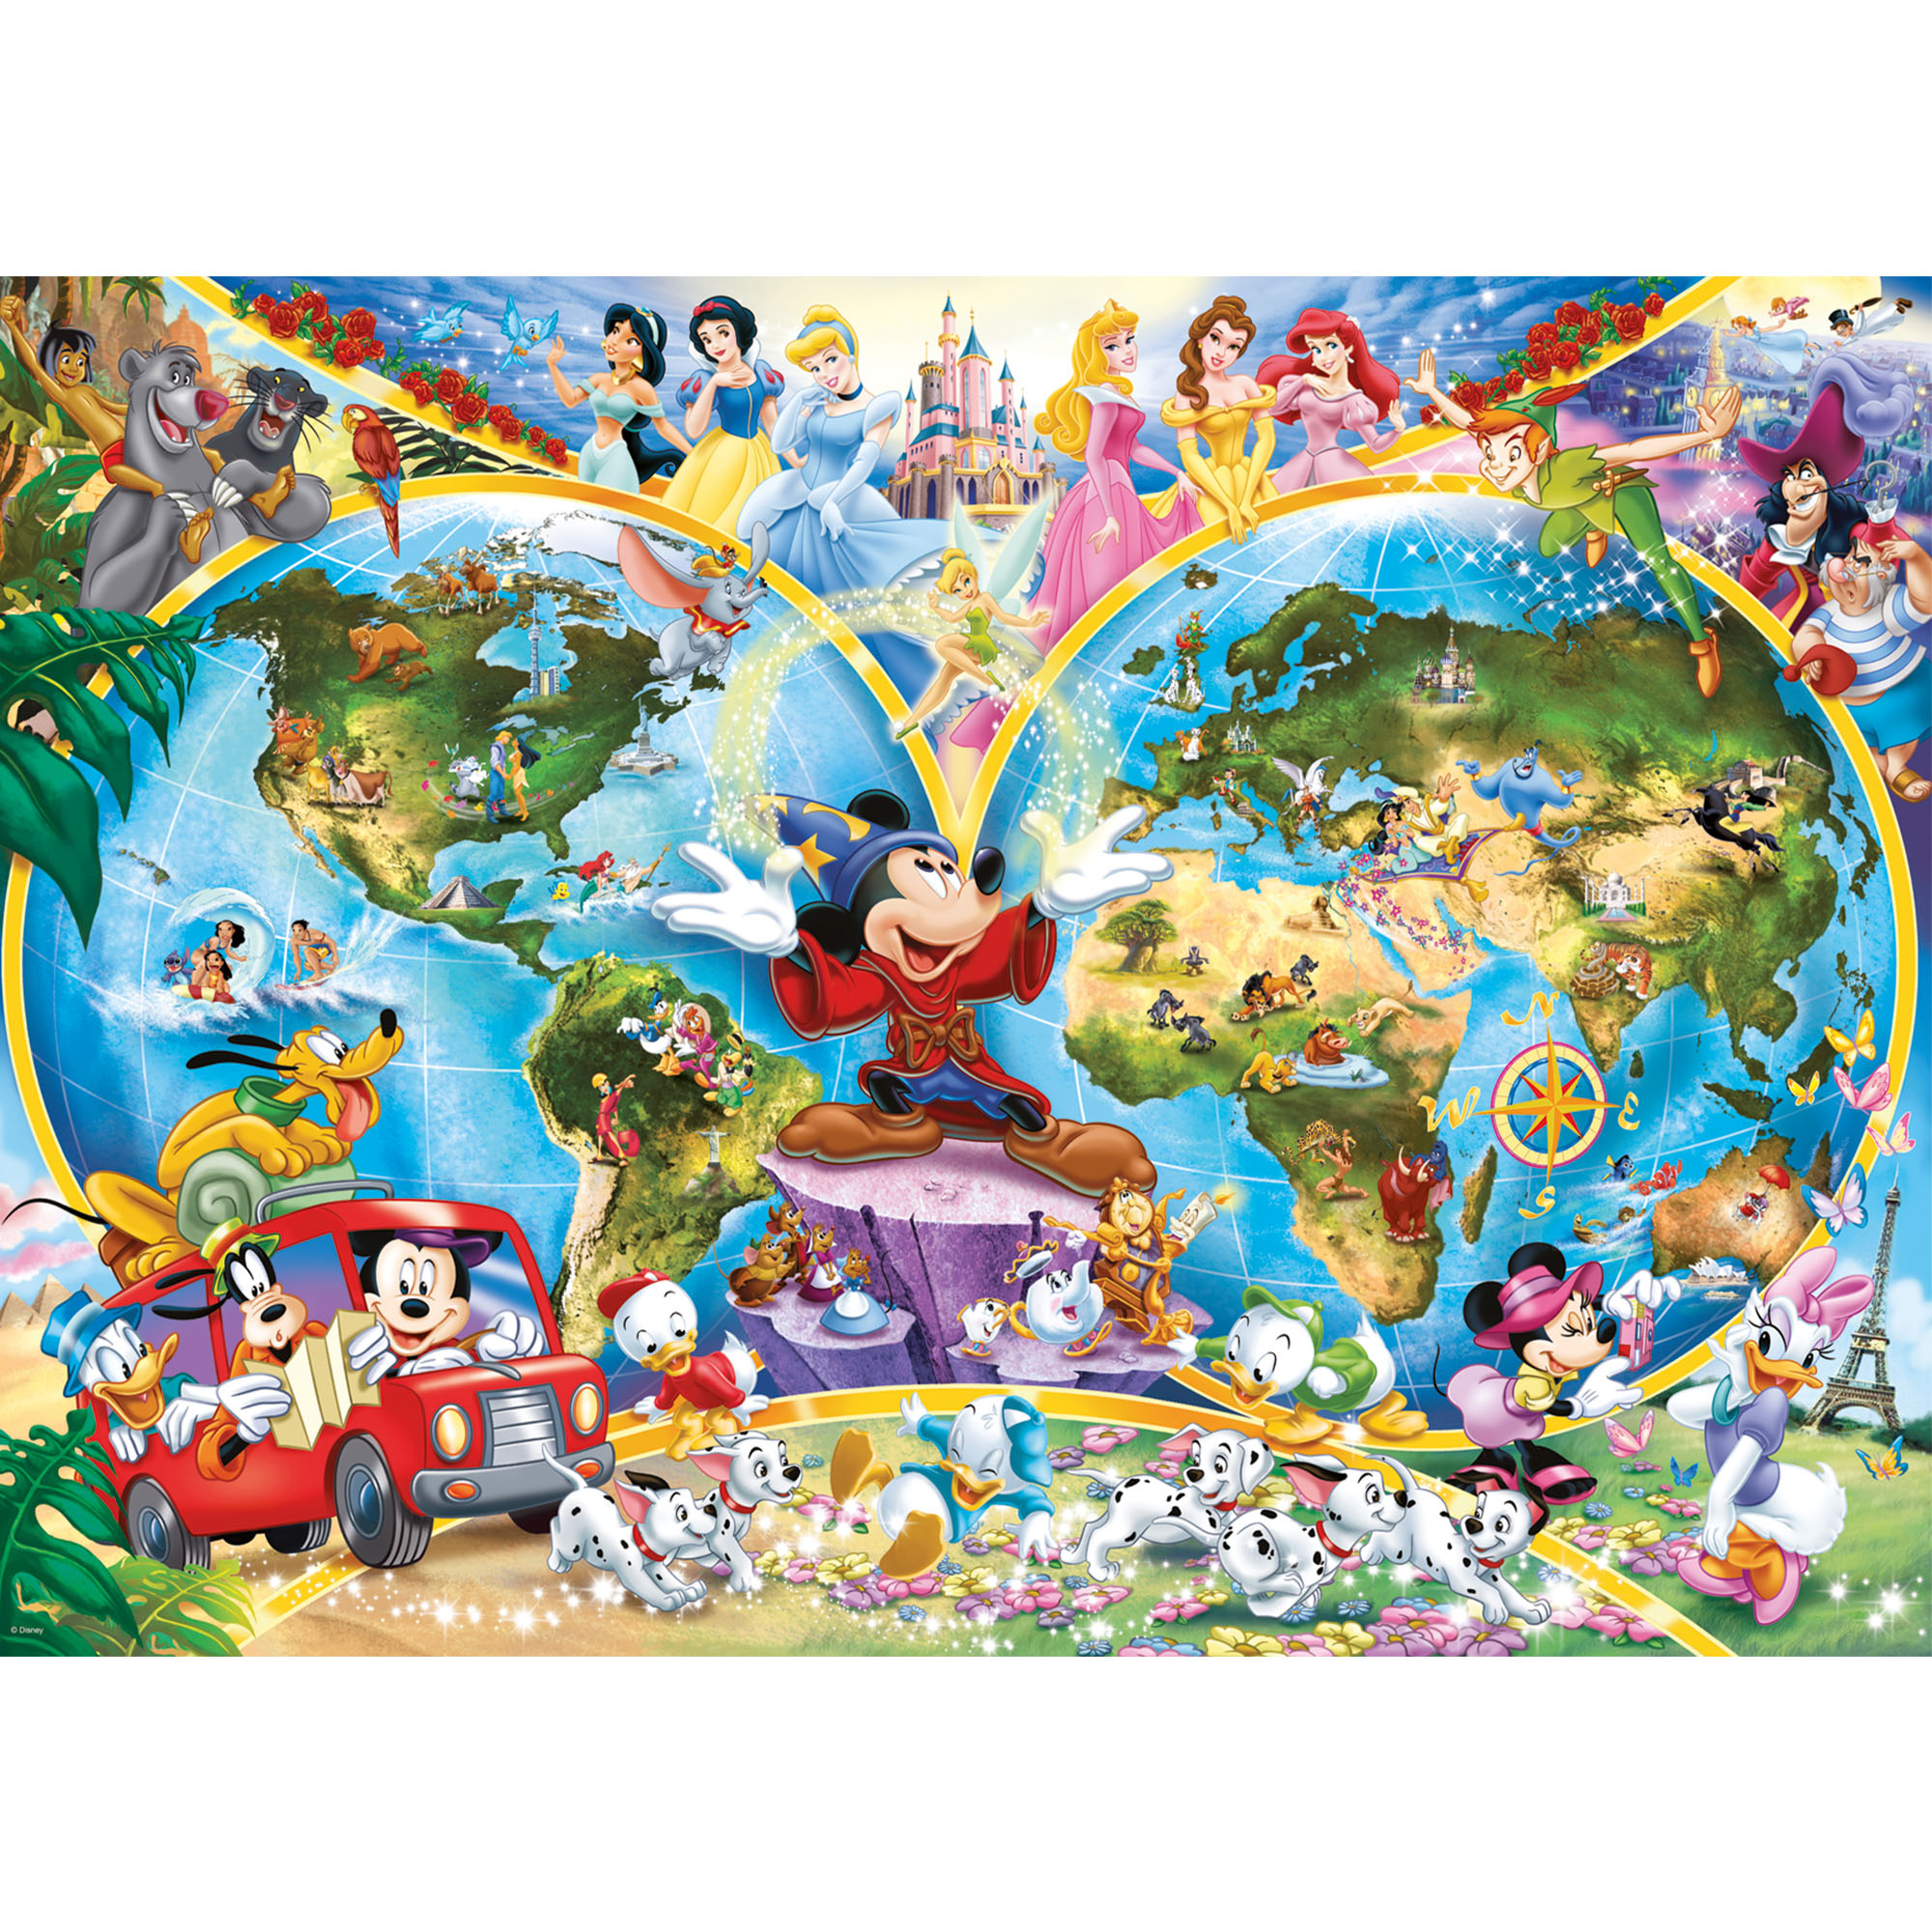 Ravensburger Puzzle 1000 pezzi 15785 - Mappamondo Disney, , large